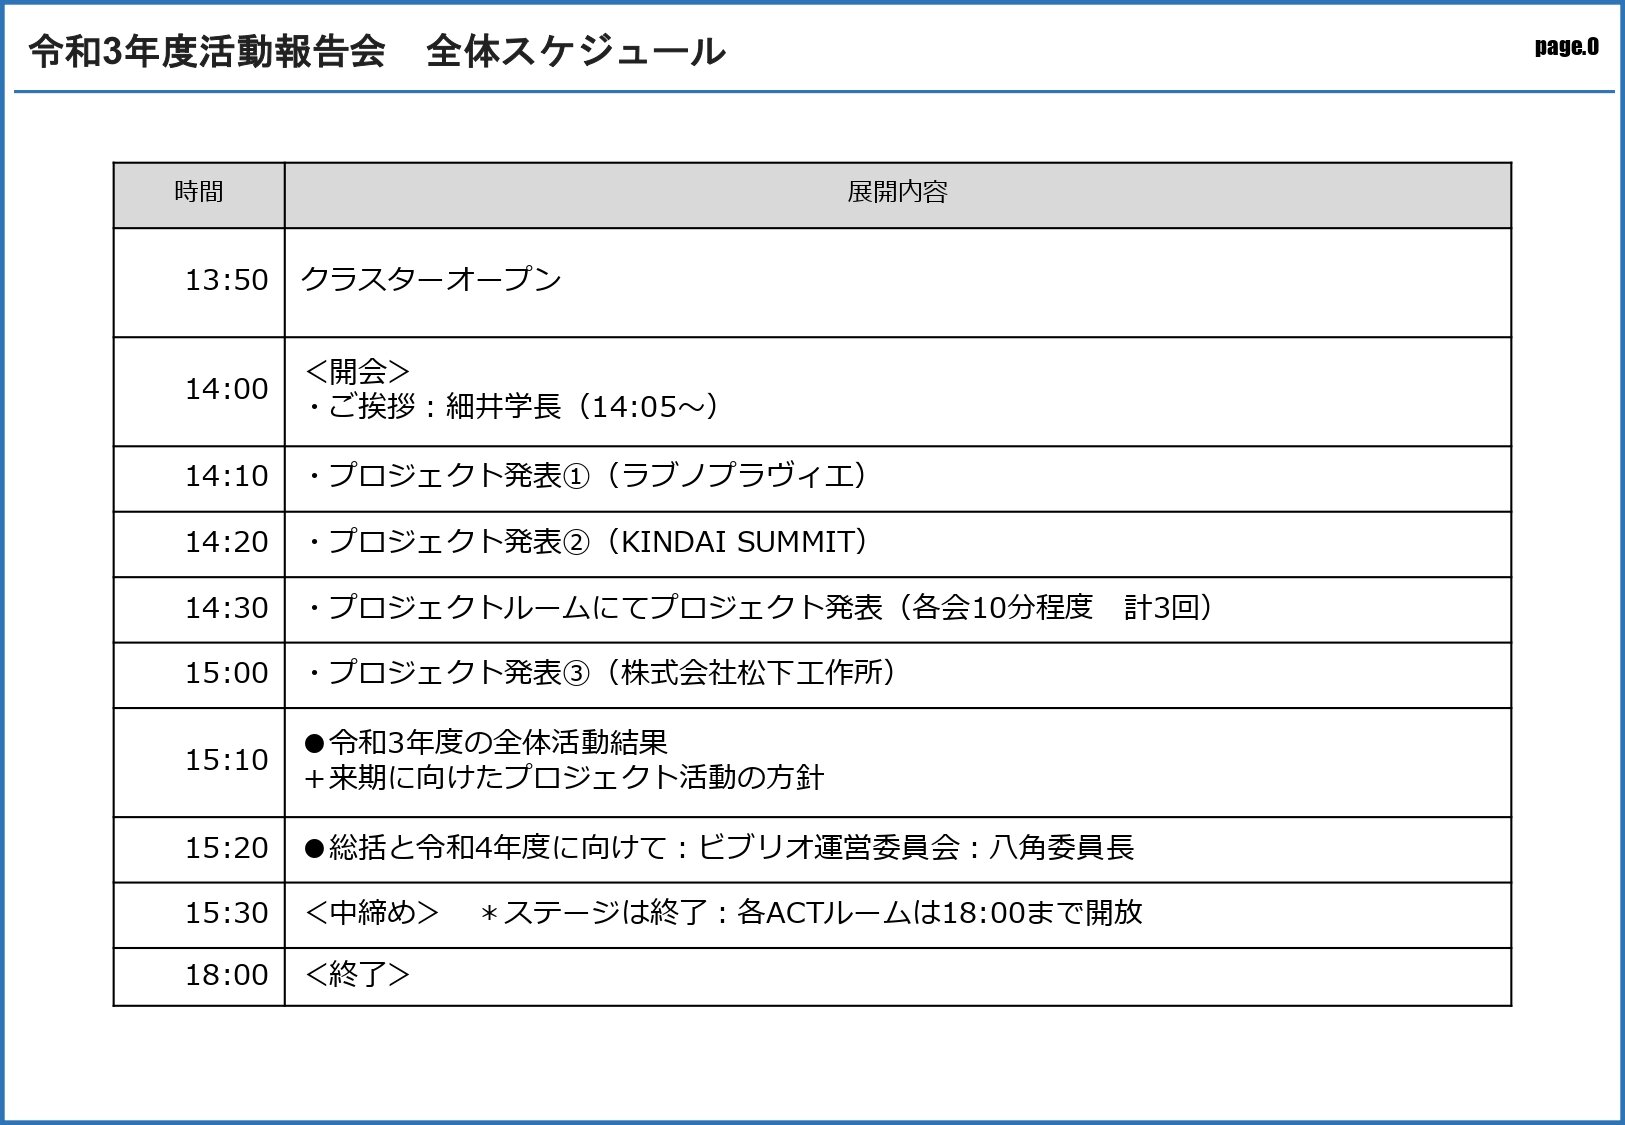 令和3年度活動報告会_スケジュール_page-0001.jpg